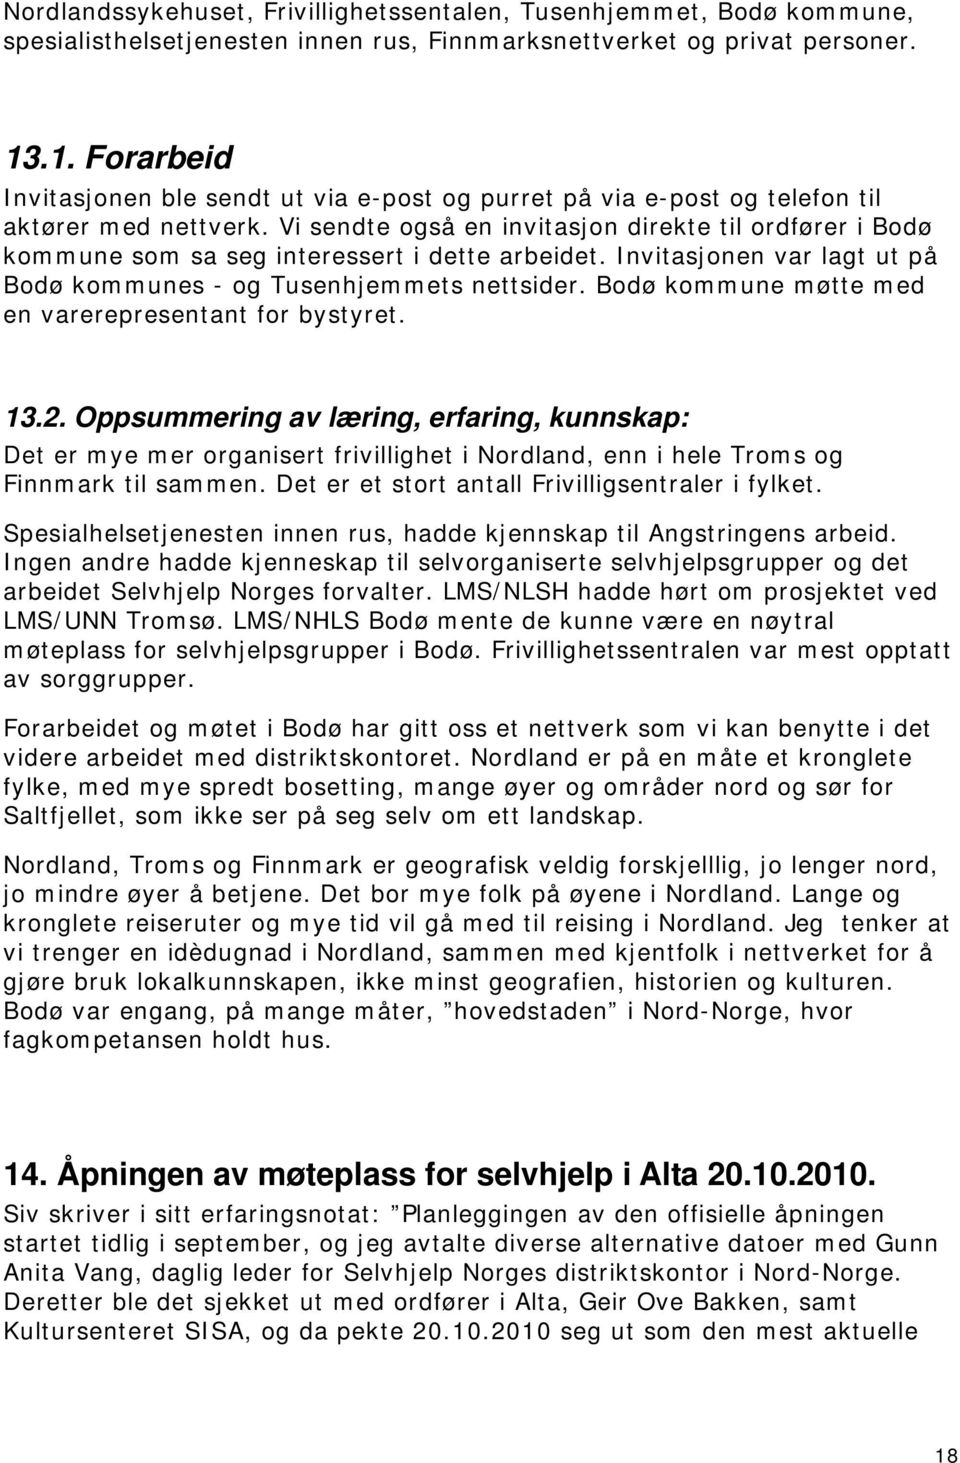 Vi sendte også en invitasjon direkte til ordfører i Bodø kommune som sa seg interessert i dette arbeidet. Invitasjonen var lagt ut på Bodø kommunes - og Tusenhjemmets nettsider.